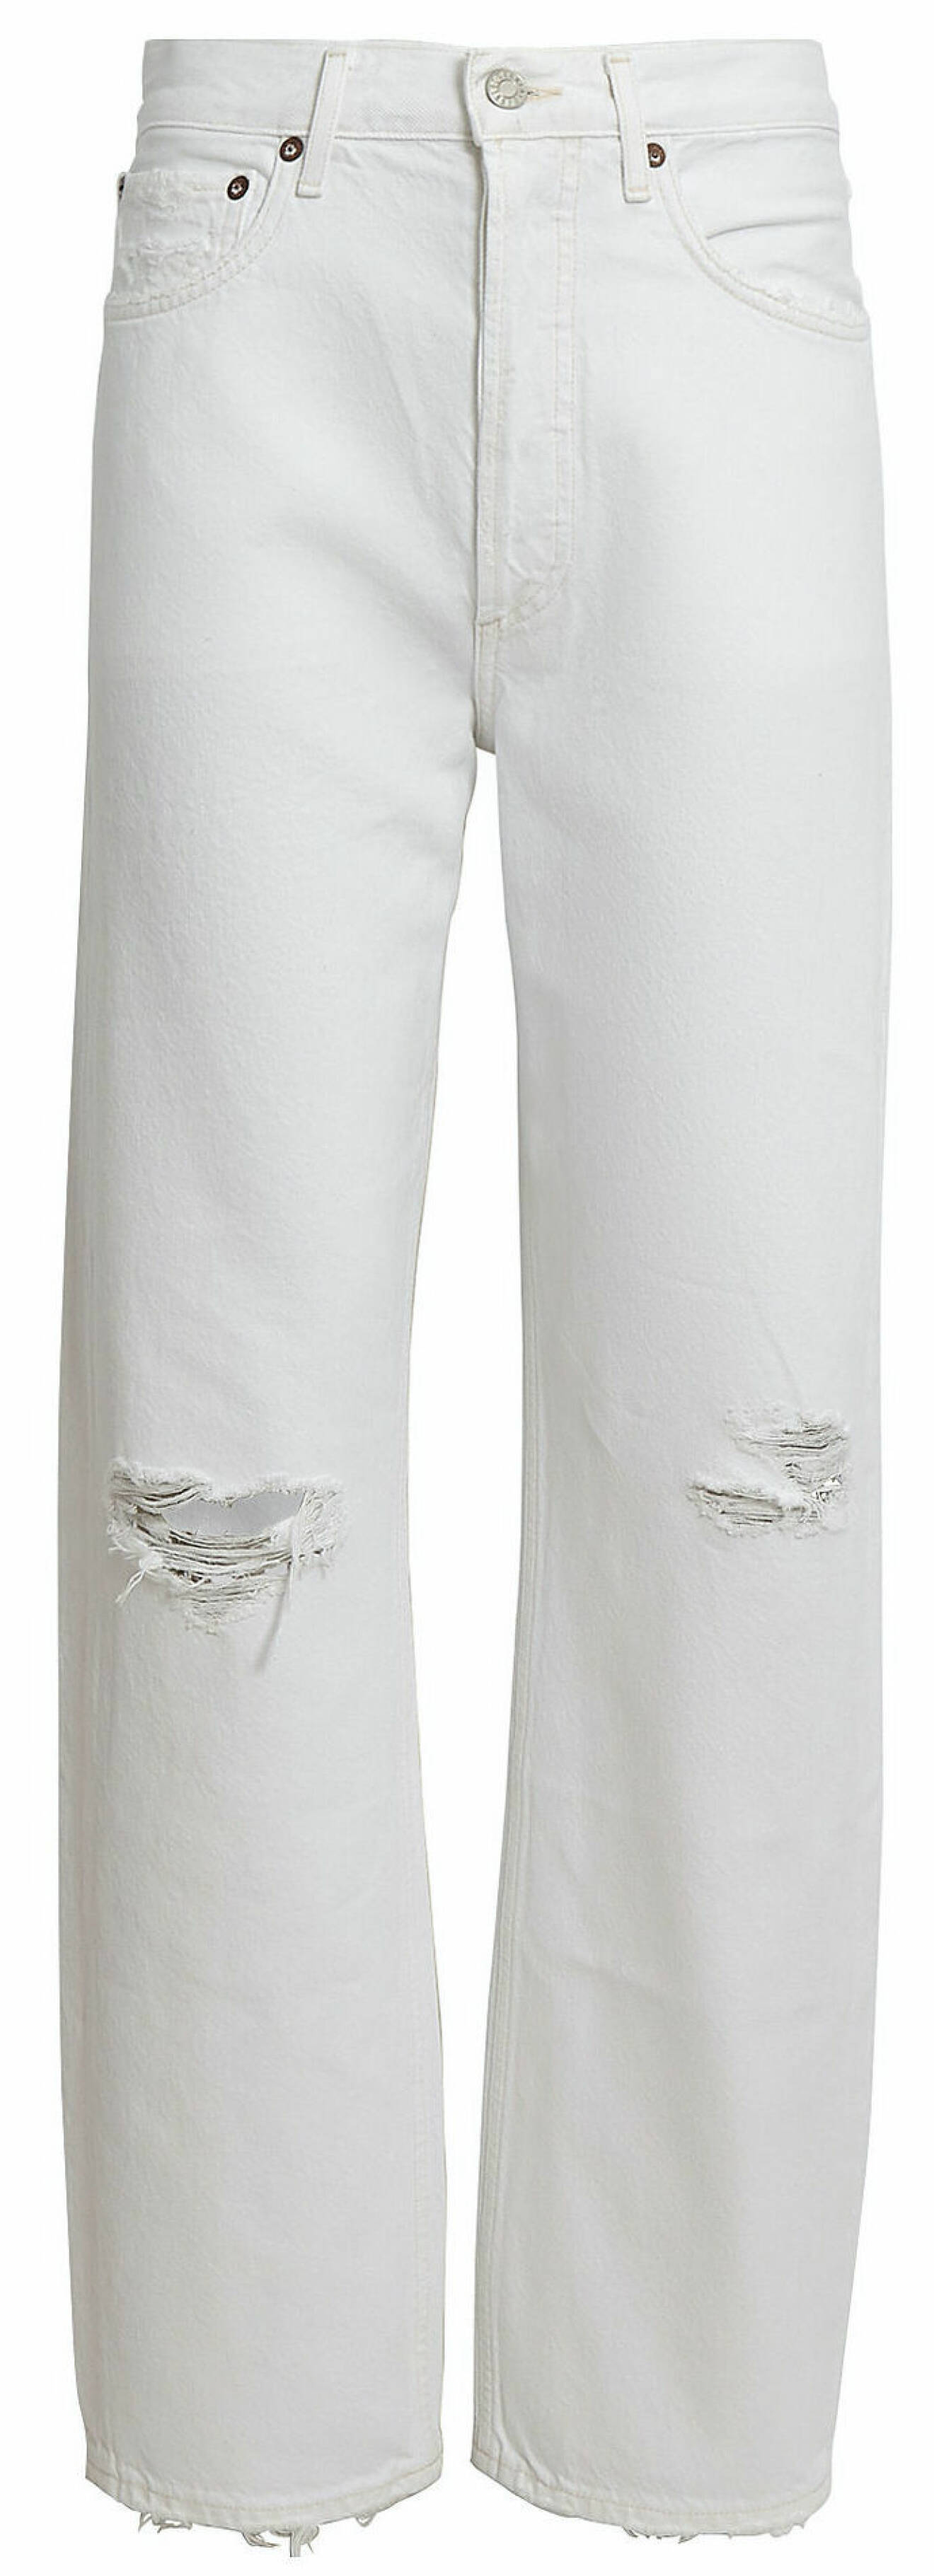 Vita jeans från Agolde med dekorativa håldetaljer